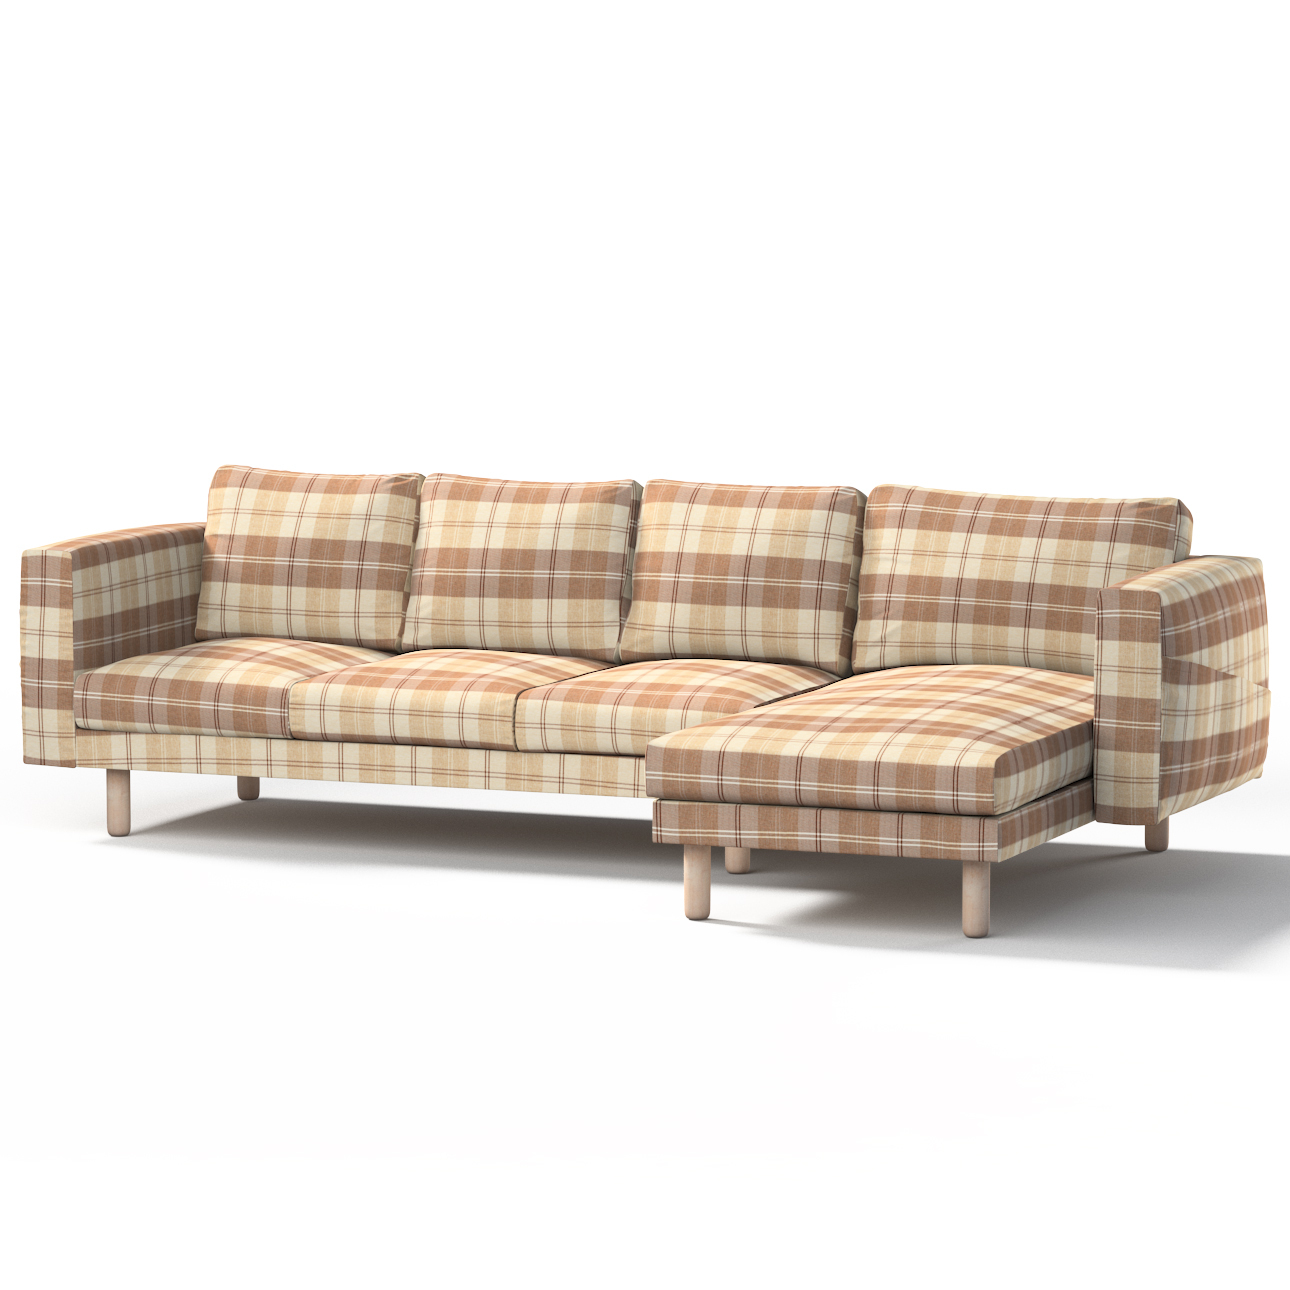 Bezug für Norsborg 4-Sitzer Sofa mit Recamiere, braun-beige, Norsborg Bezug günstig online kaufen